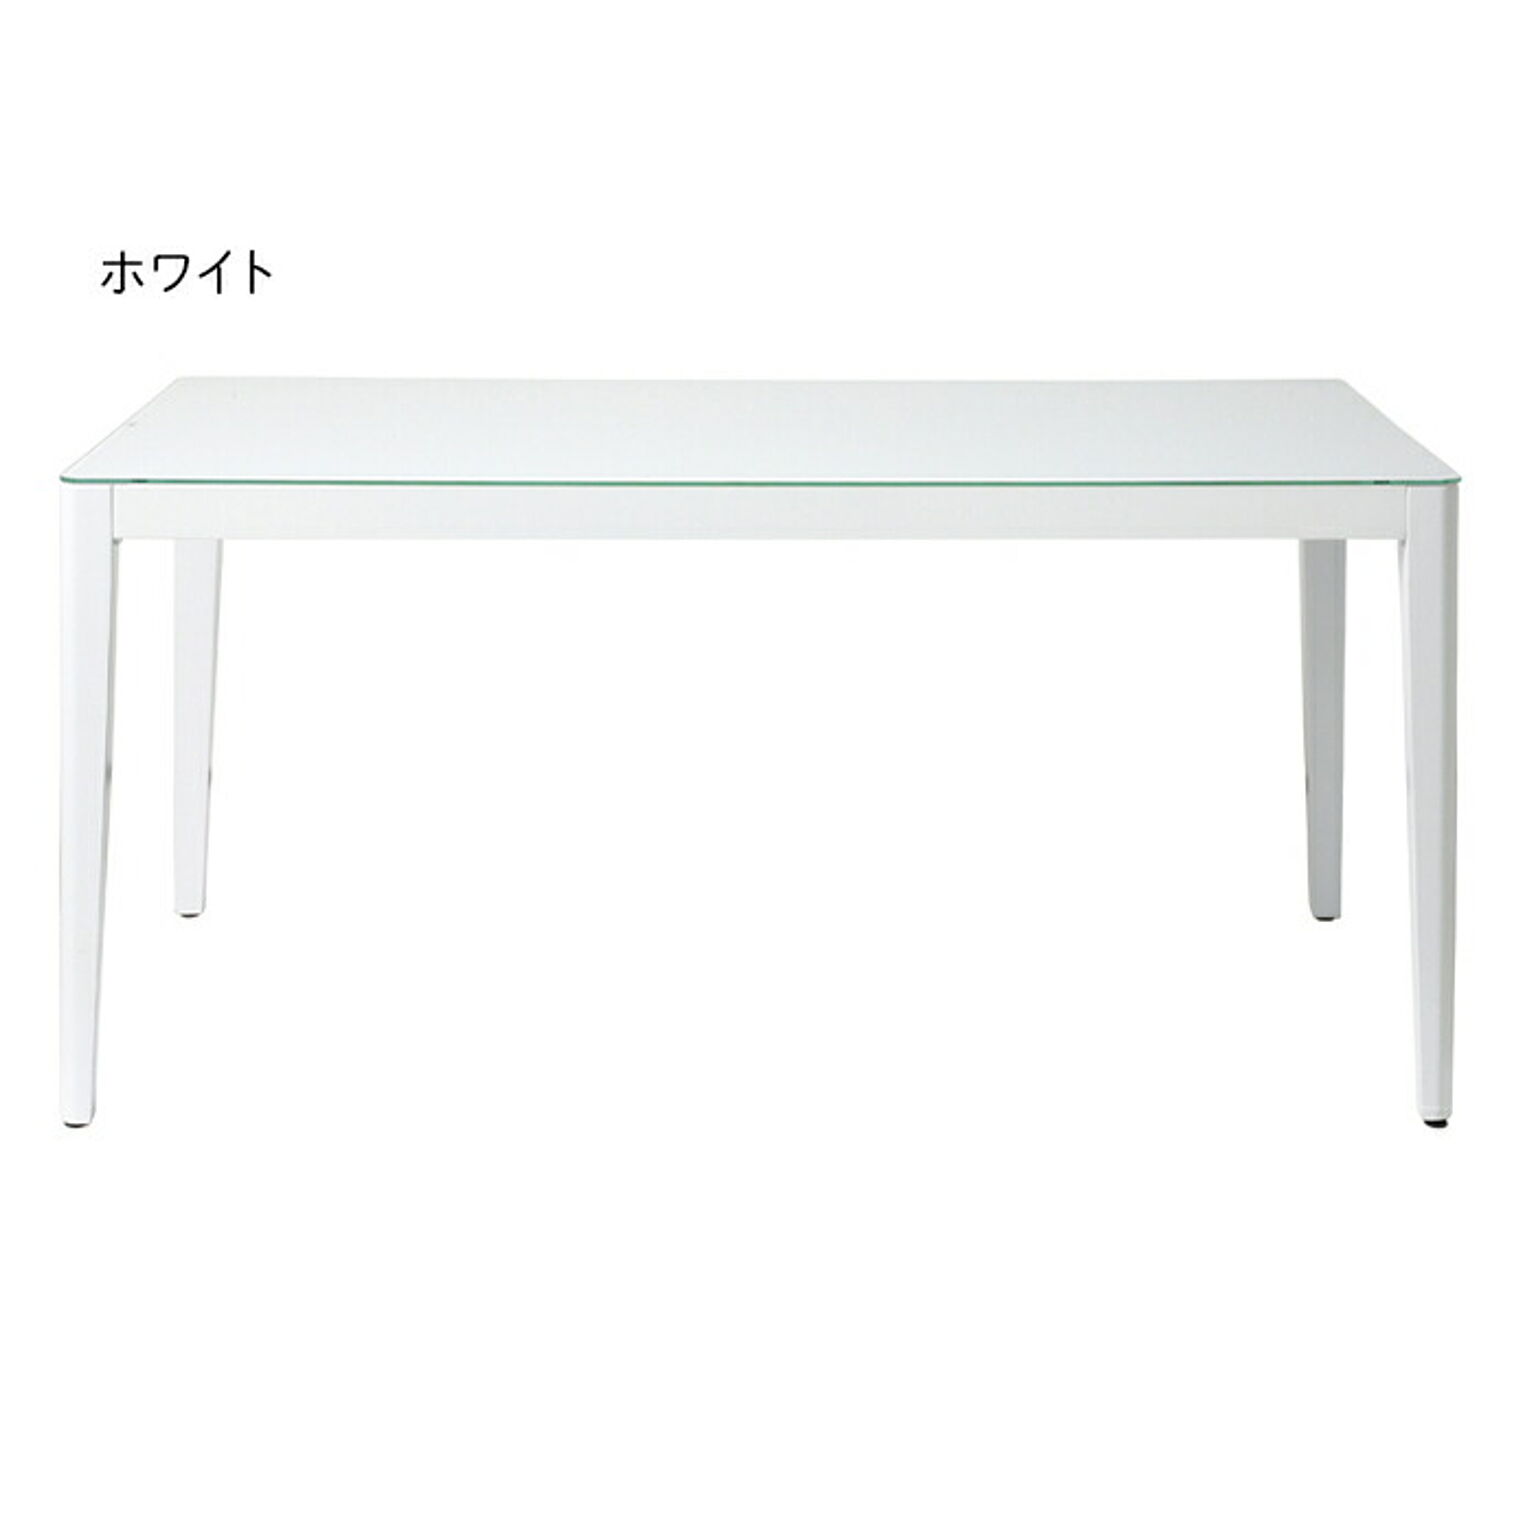 テーブル 組立式 ウィズ ダイニングテーブル 150 幅1500x奥行800x高さ720mm あずま工芸